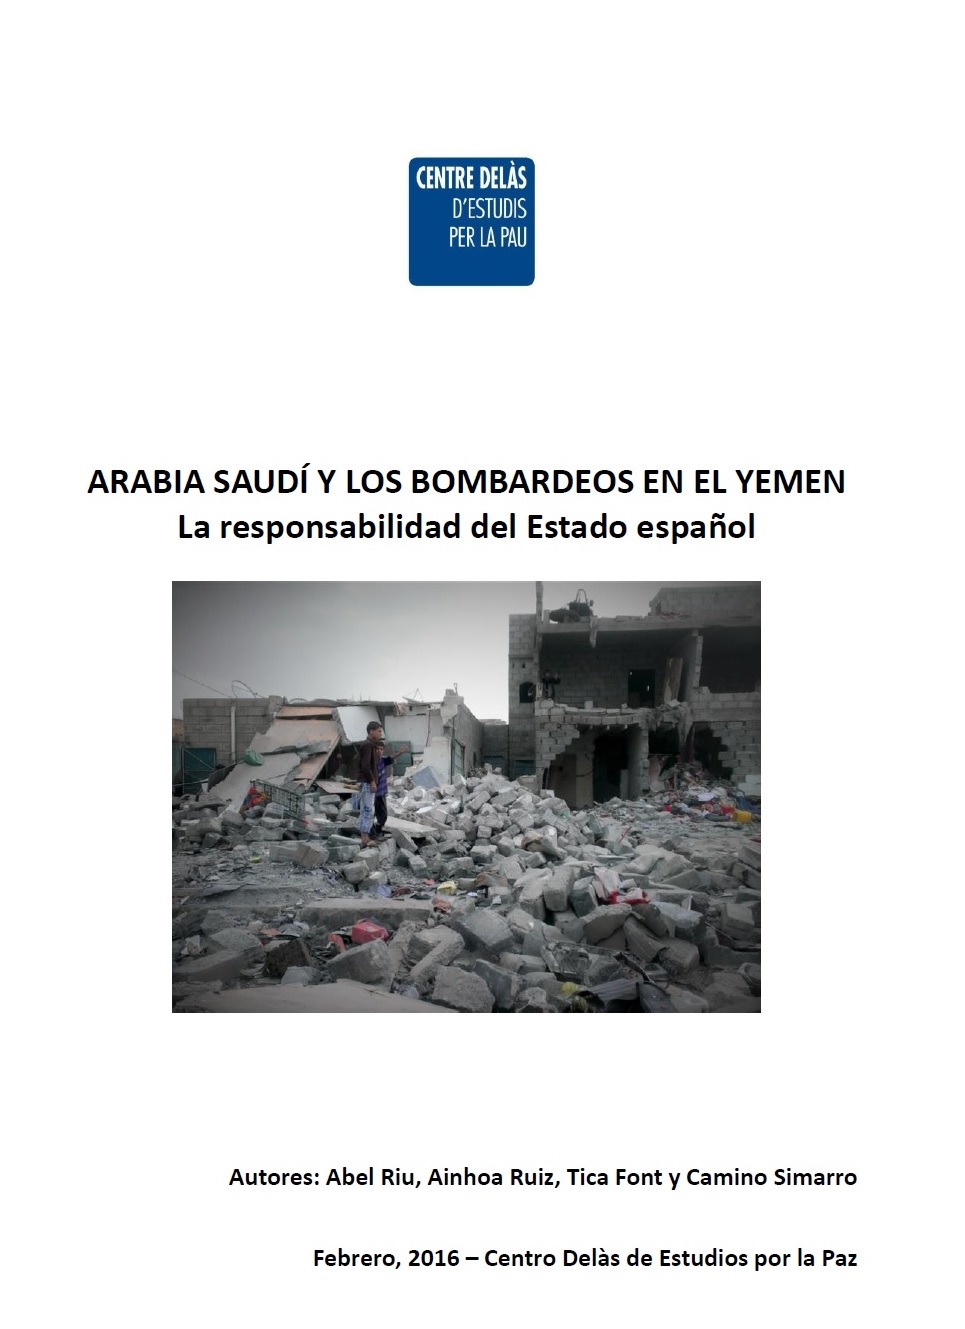 Nueva ortada informe ArabiaSaudiYemen